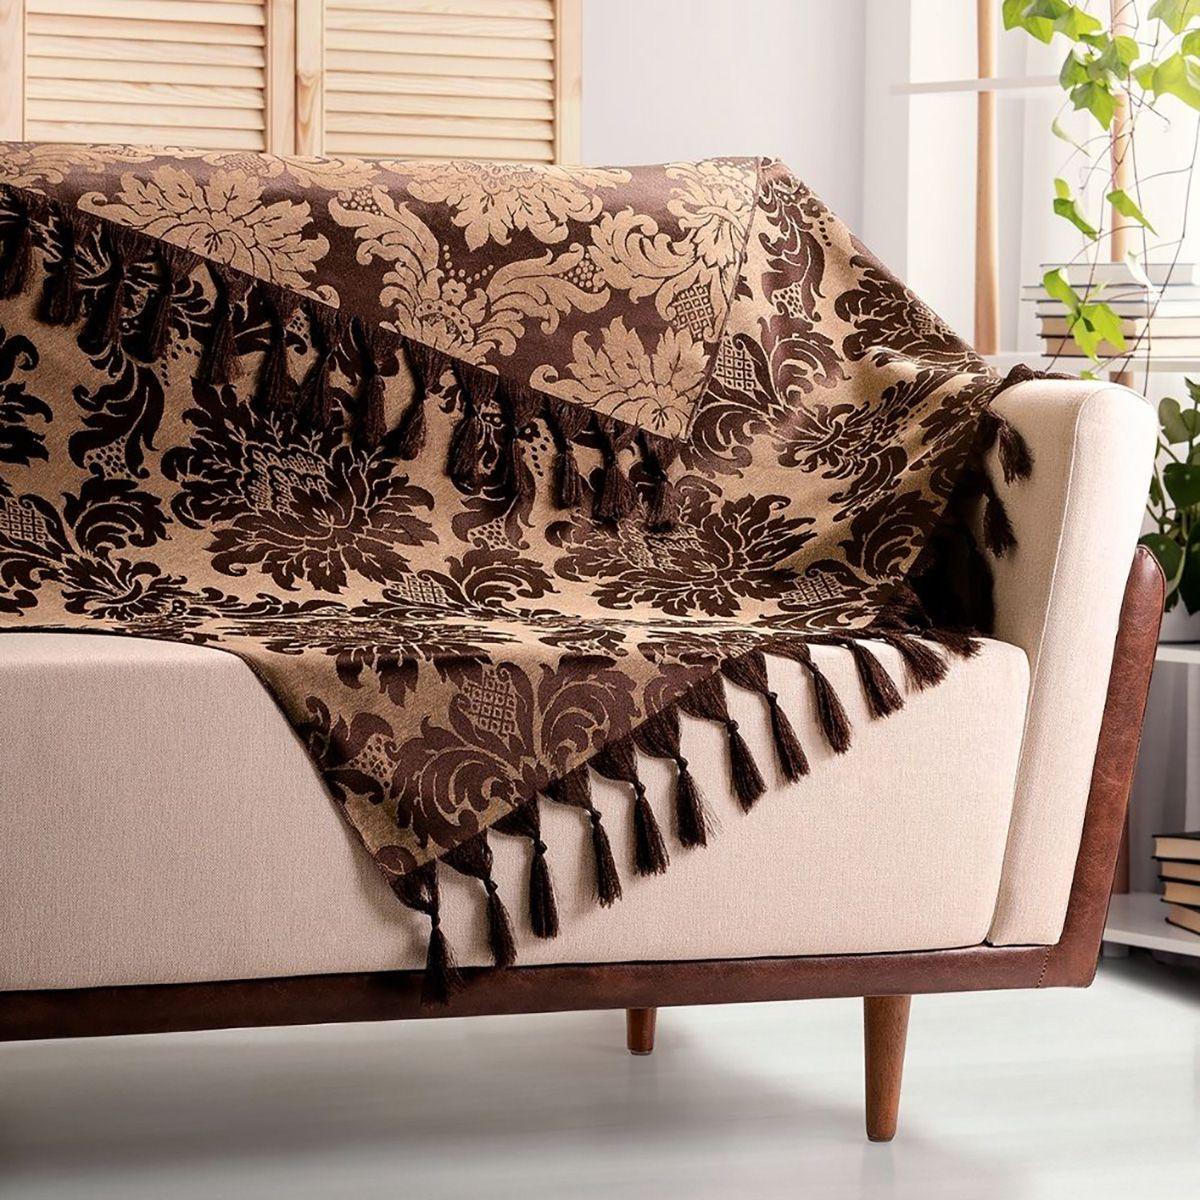 Details 50 manta para sofá gigante 3m